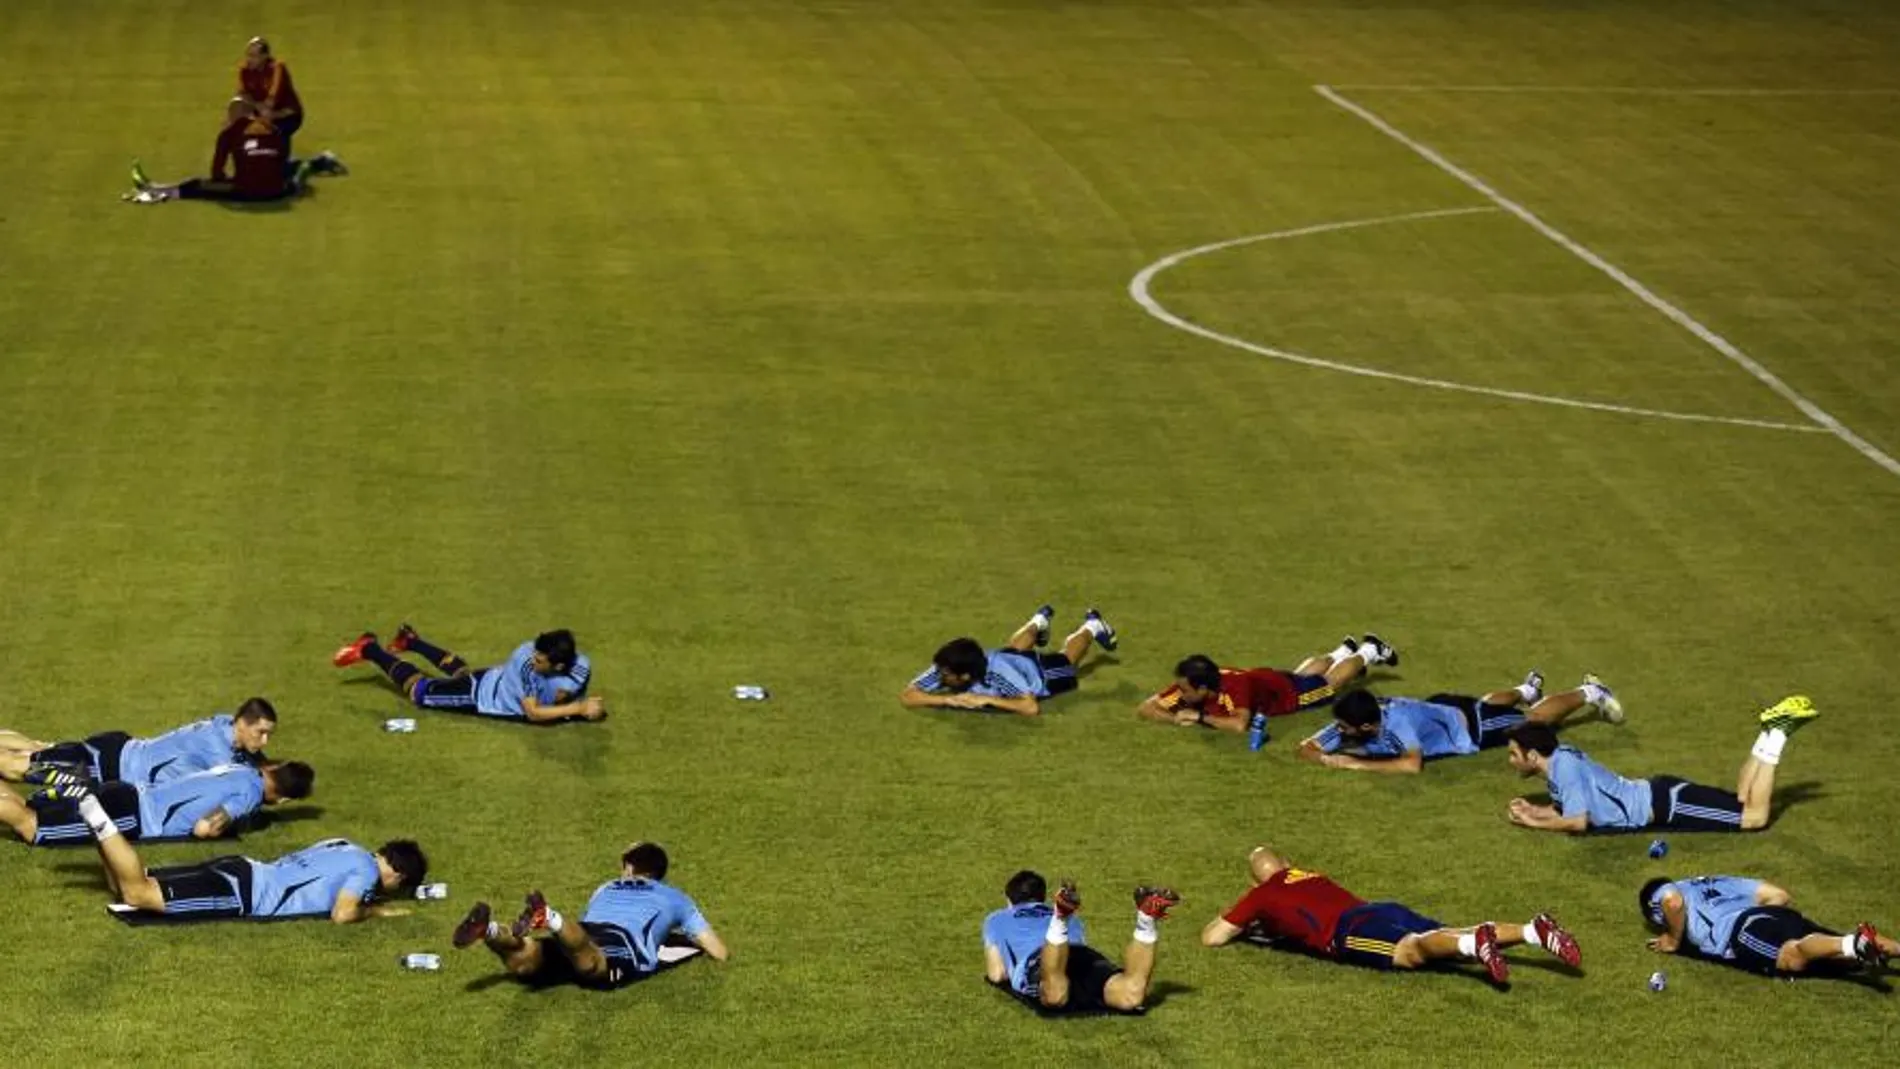 La Selección se entrena en un complejo deportivo privado en Fortaleza (Brasil)